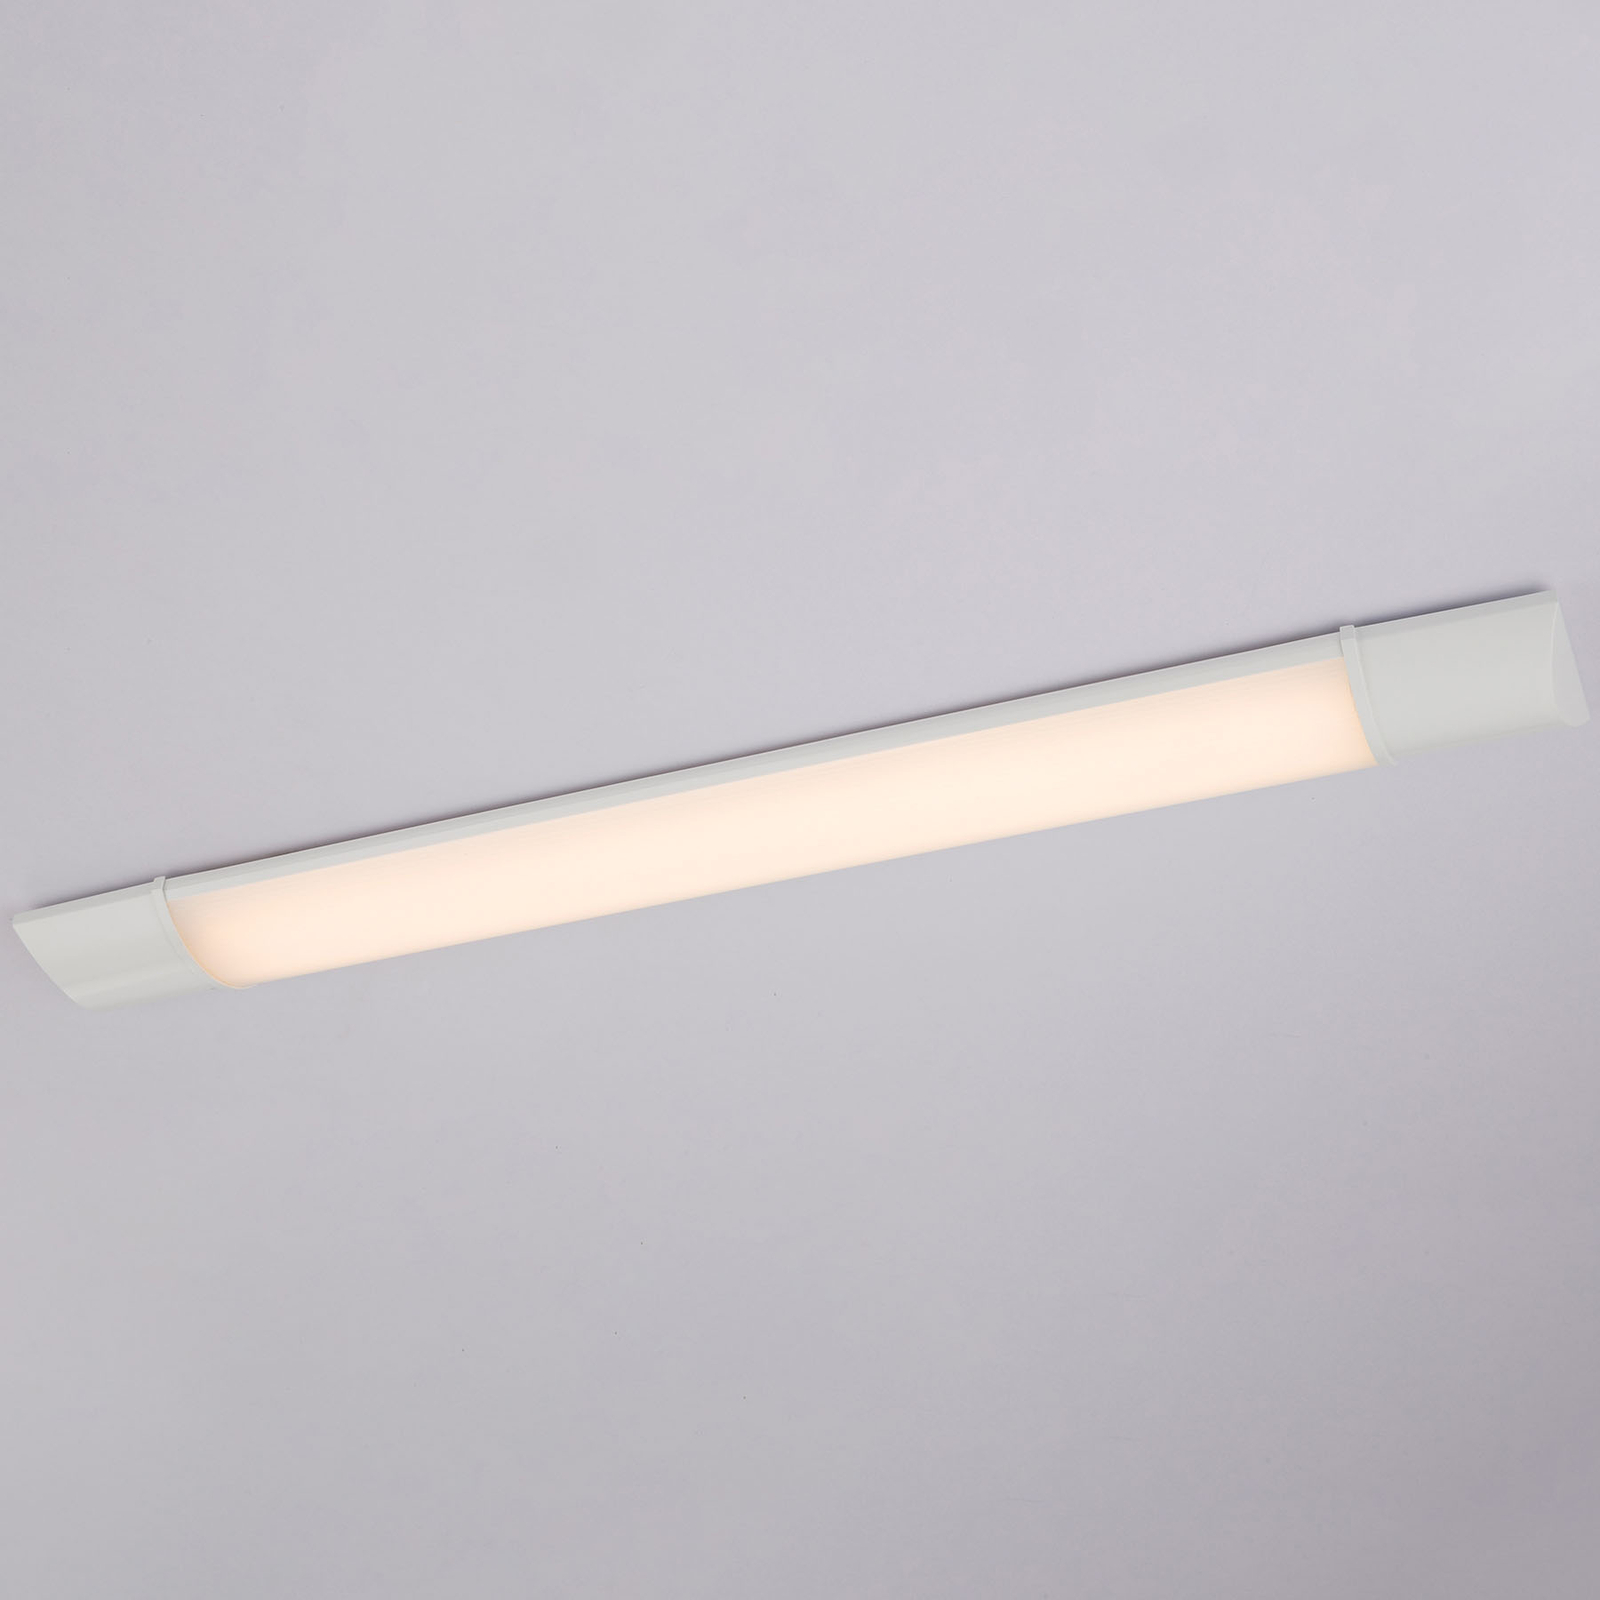 LED-lampa för underskåp Obara, IP20, 60 cm lång